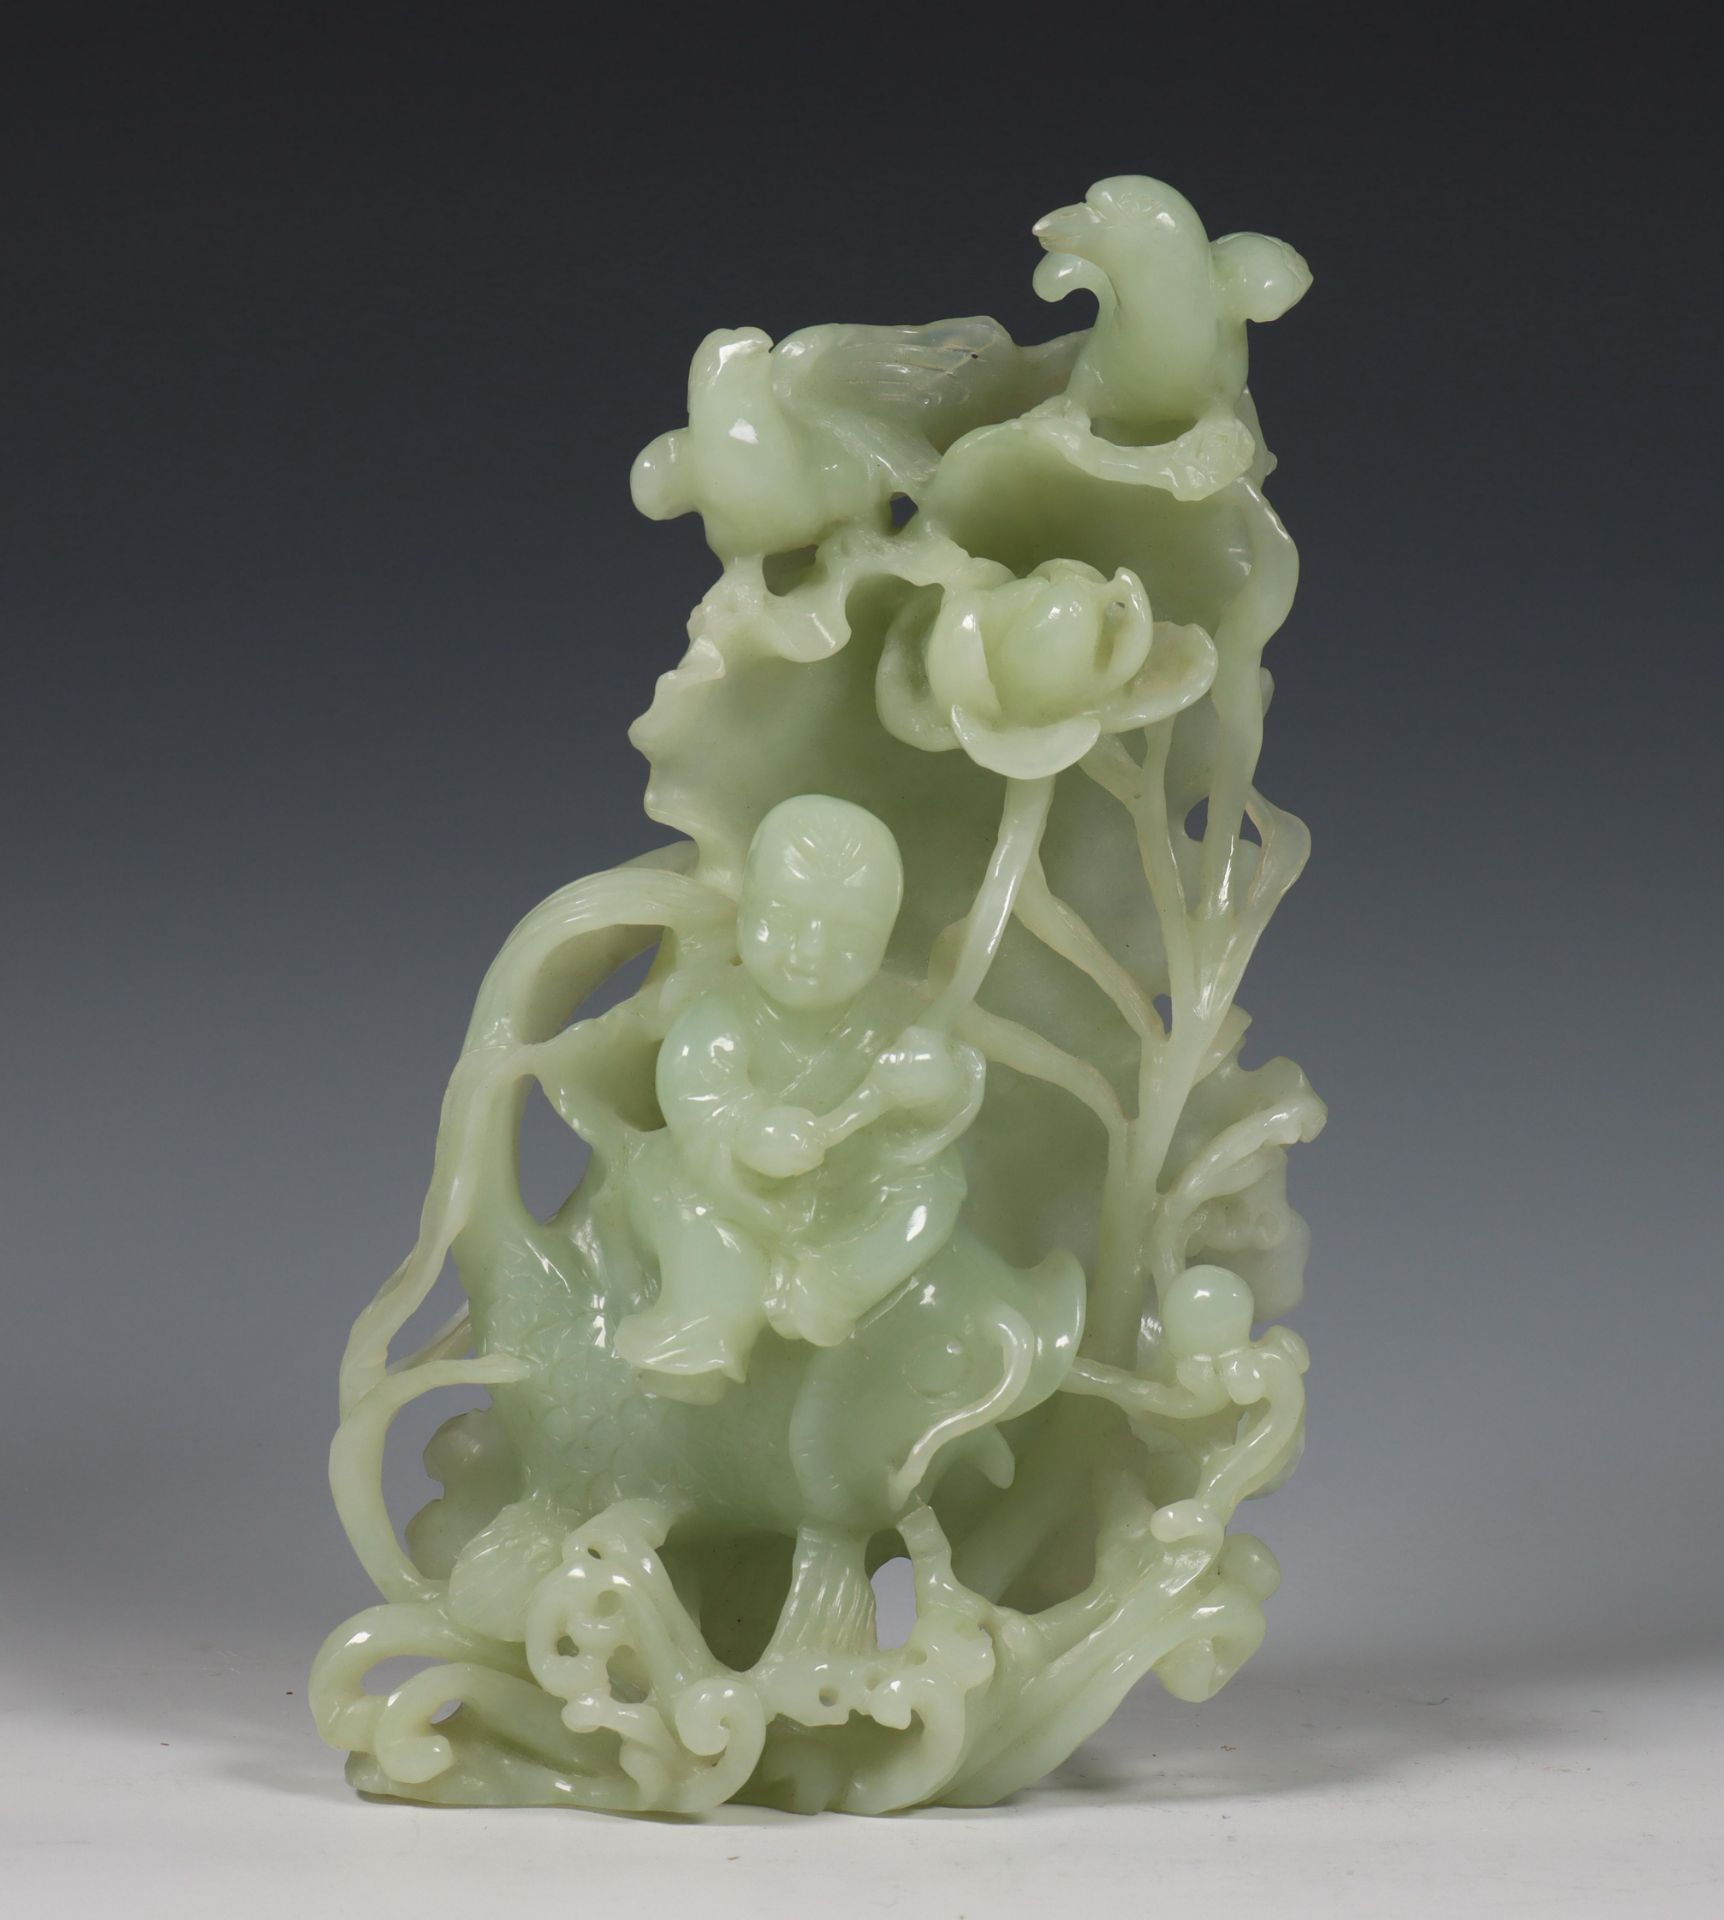 China, jadeiet snijwerk, 20e eeuw,